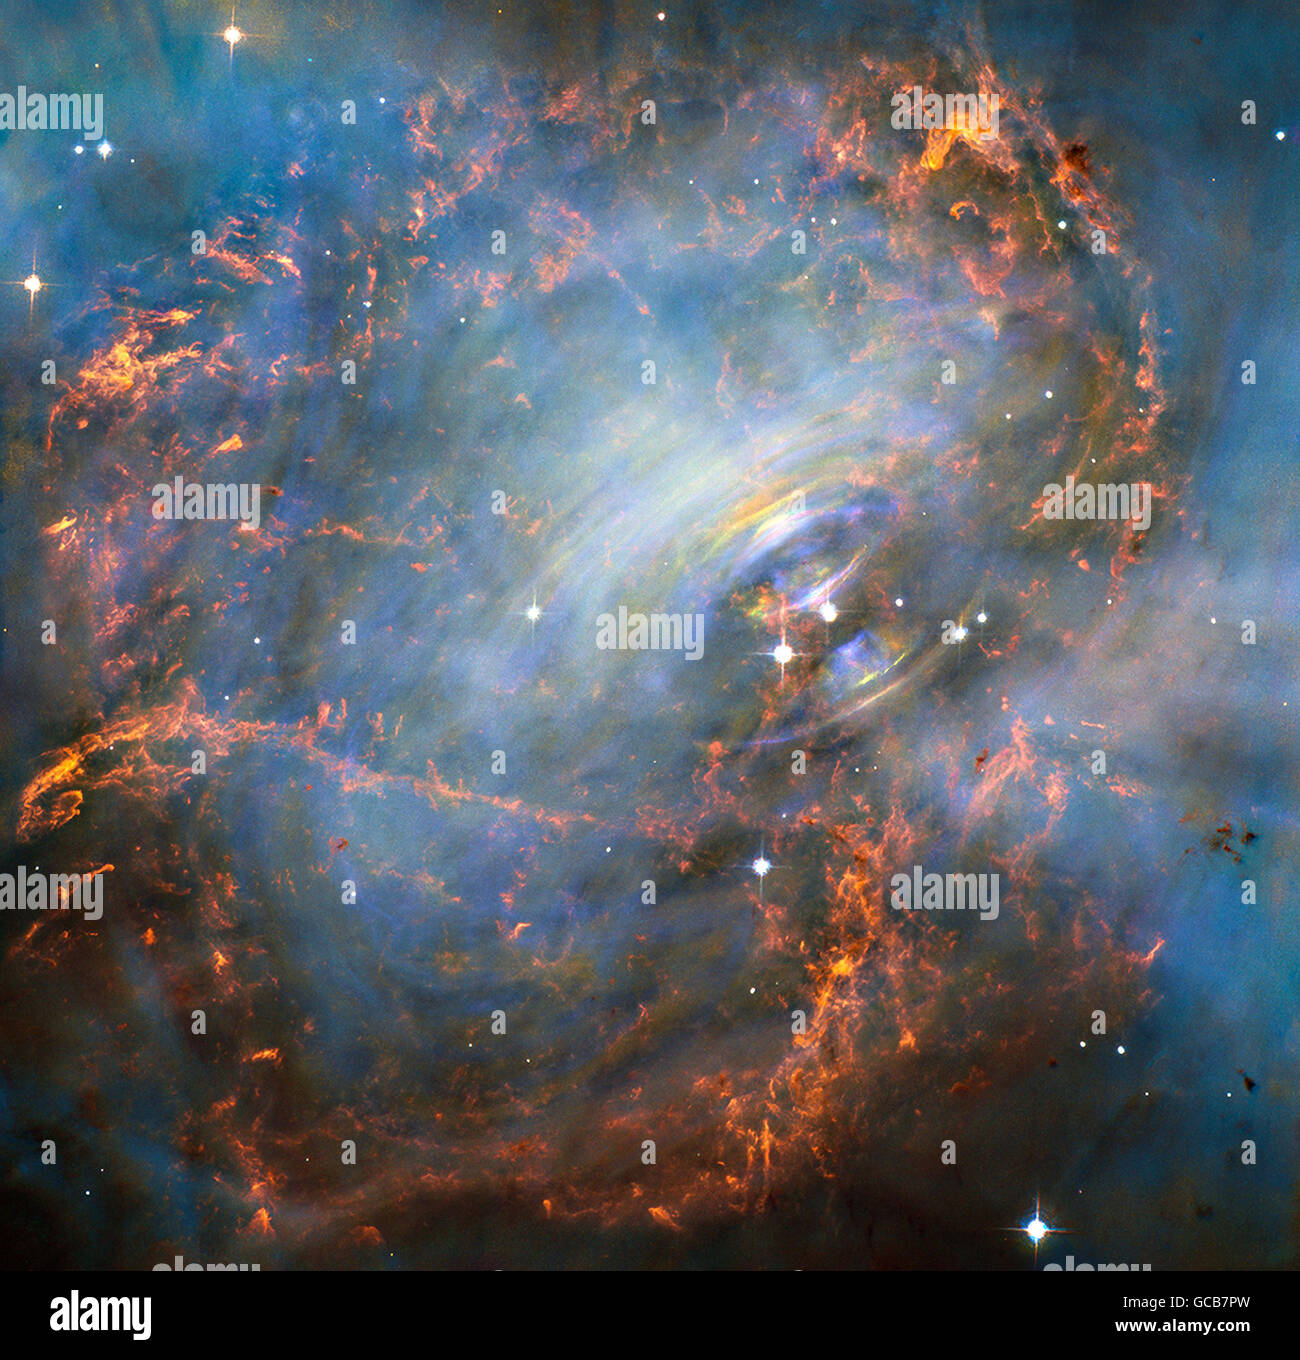 Le télescope Hubble de la NASA voir au cœur de la Nébuleuse du Crabe, cette image révèle le coeur de l'un des plus historiques et étudié les restes d'une supernova, l'explosion d'une étoile. La région de l'intérieur envoie des impulsions d'horloge-comme des rayonnements et des tsunamis de particules chargées dans des champs magnétiques. L'étoile à neutrons au centre même de la Nébuleuse du Crabe a environ la même masse que le soleil mais compressée en une sphère dense qui n'est qu'à quelques milles. Tourner 30 fois par seconde, l'étoile à neutrons tire hors de l'énergie des faisceaux détectable que faire Banque D'Images